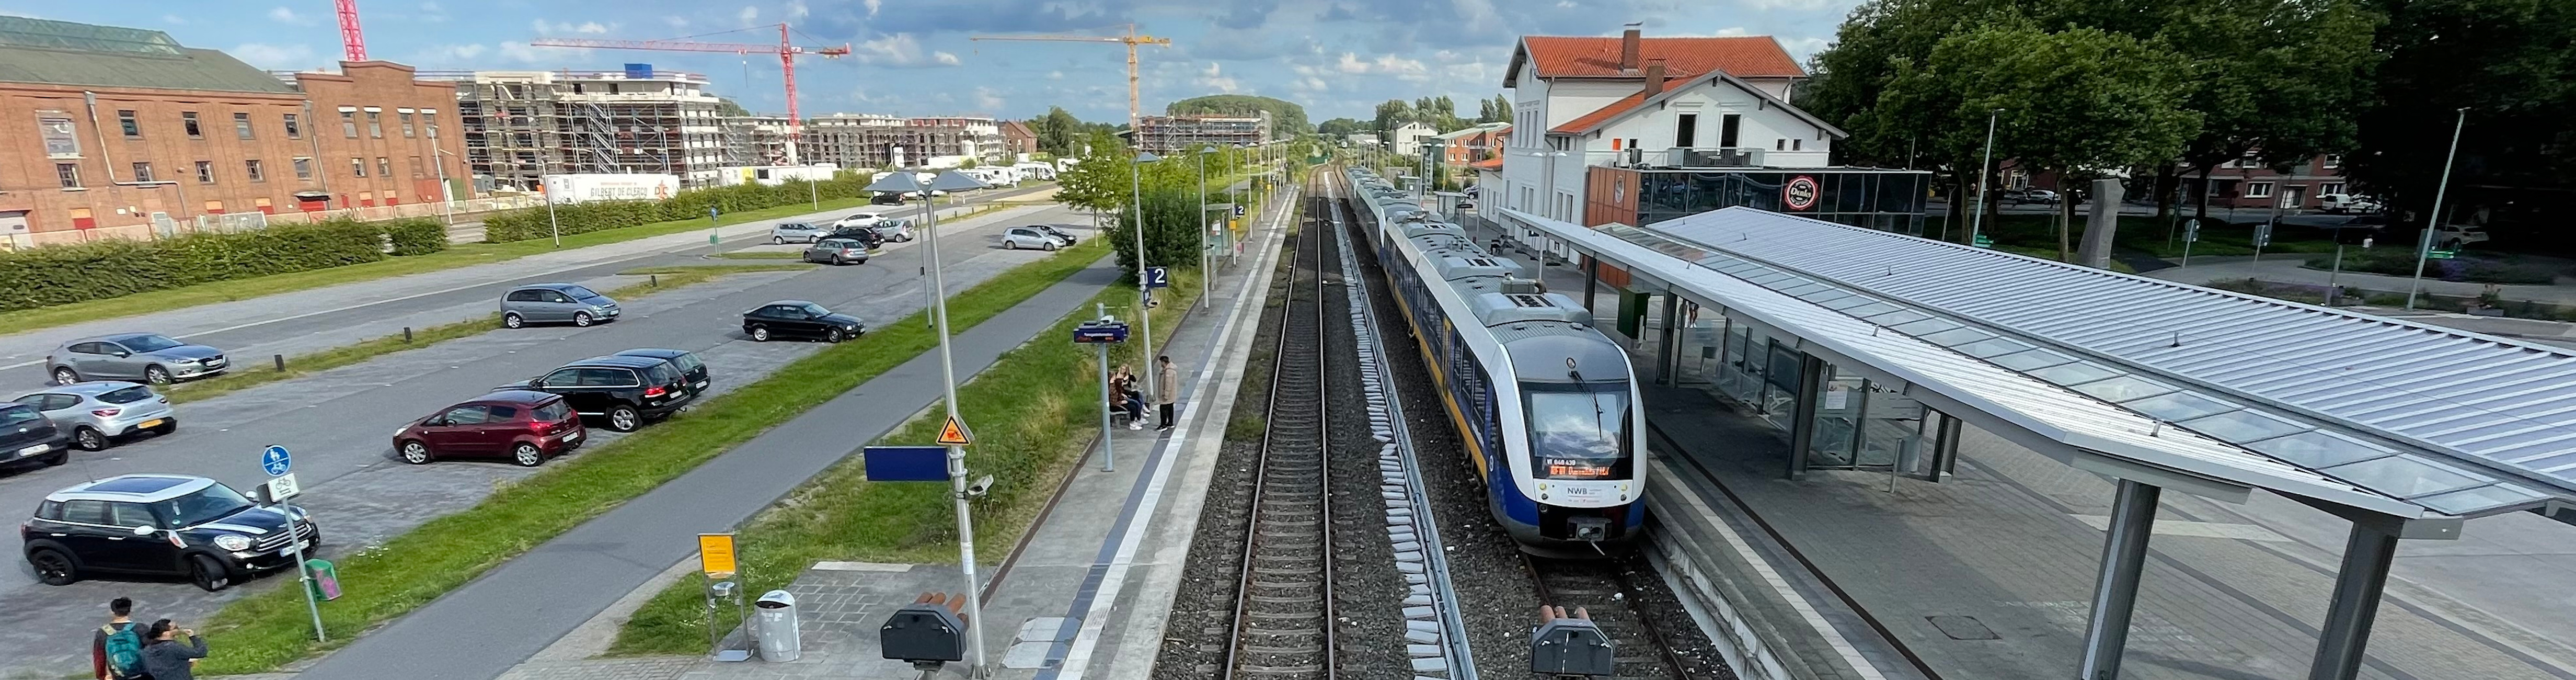 Bahnhof Kleve mit Zug